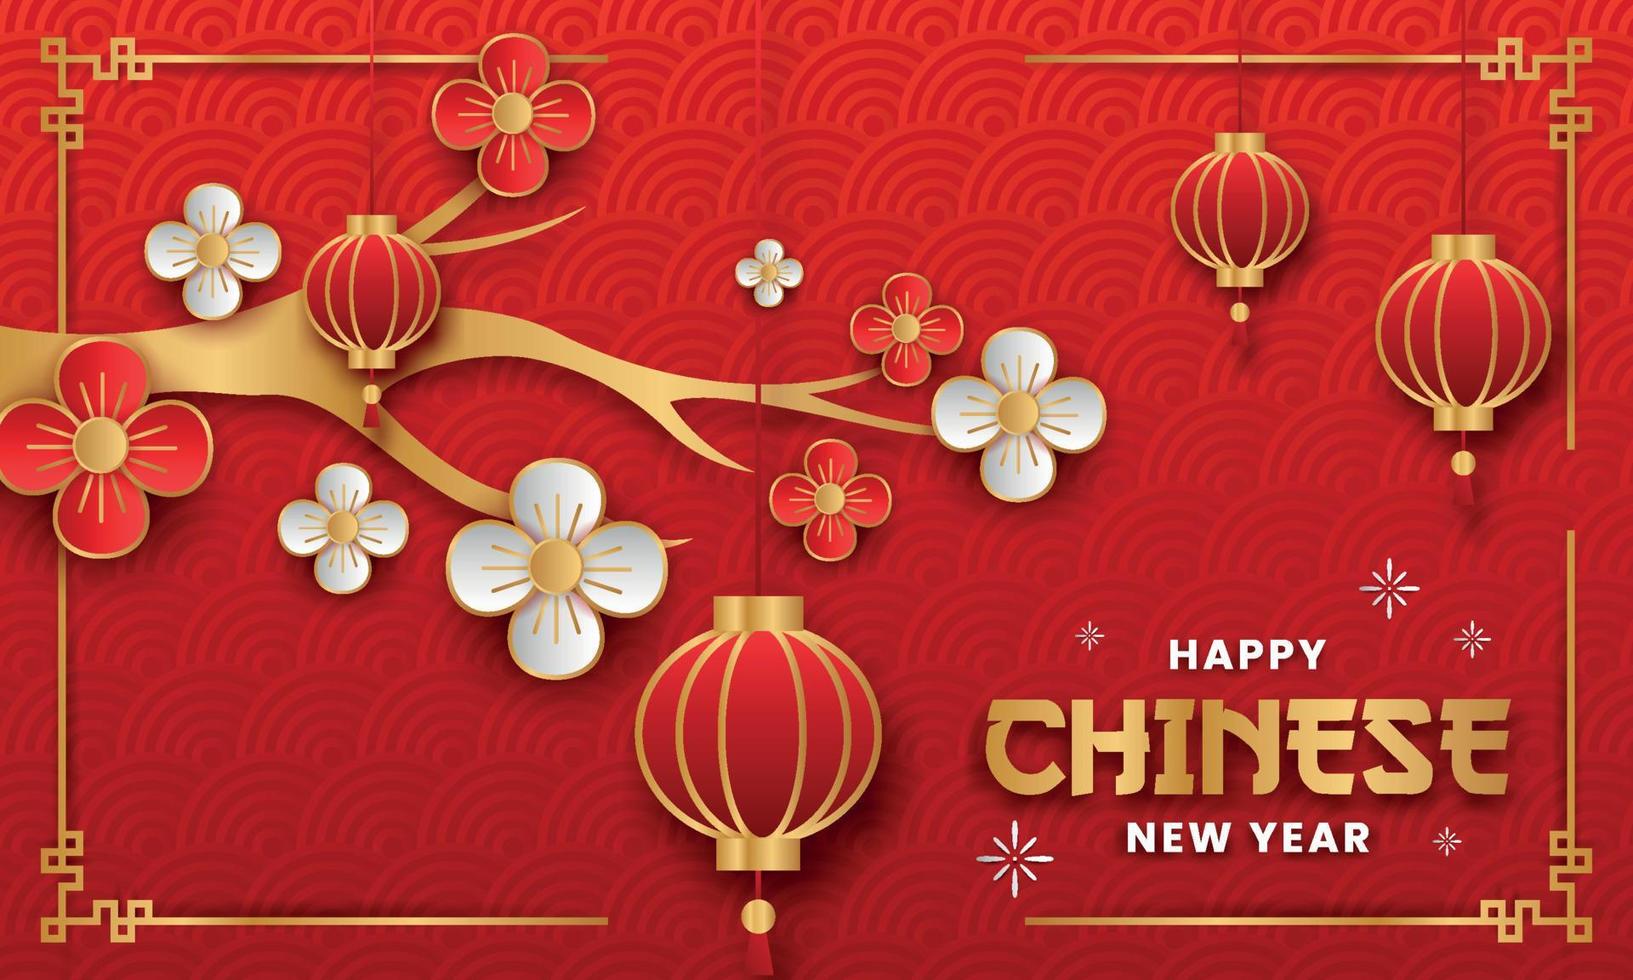 feliz ano novo chinês design de vetor de estilo de papel. panfleto ou cartaz de ano novo chinês com tema de lanterna e nuvem chinesa.